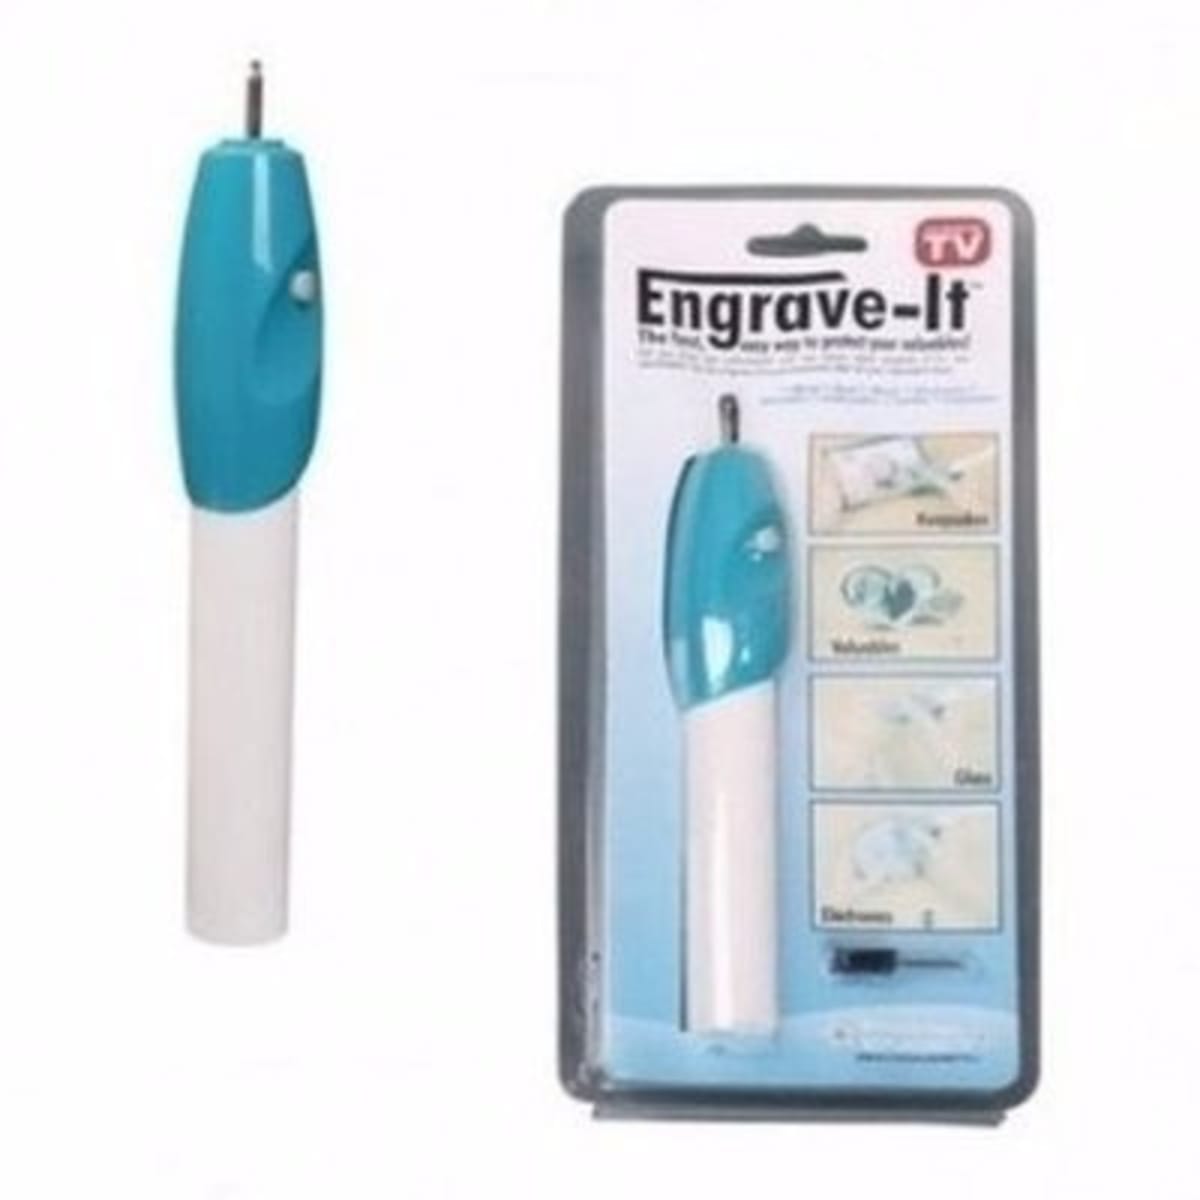 EZ Multi-Function Engrave It Pen